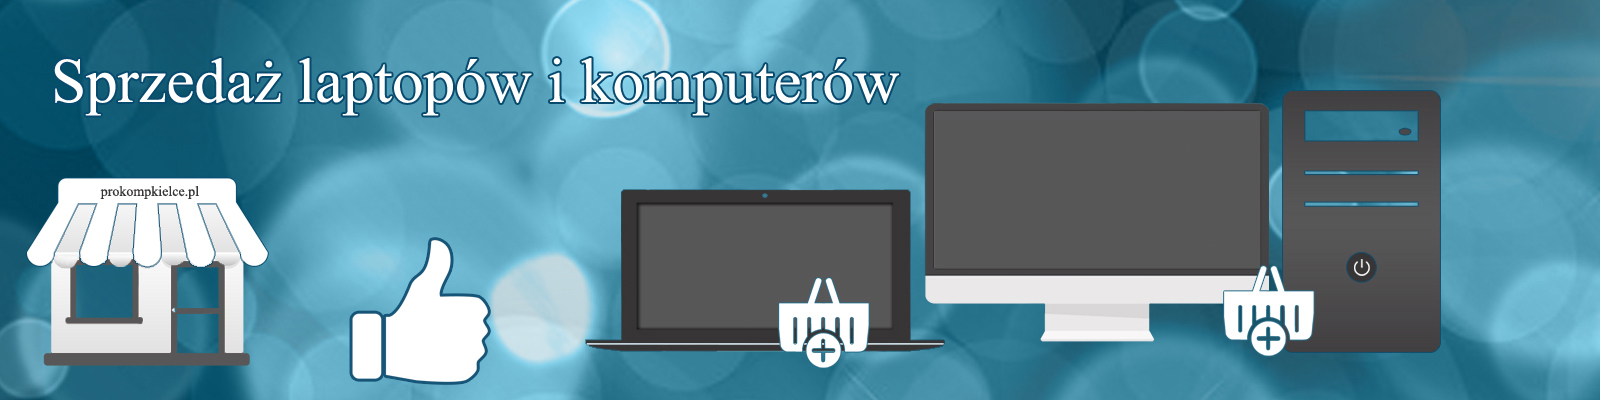 sprzedaz_laptopow_komputerow_prokompkielce.pl